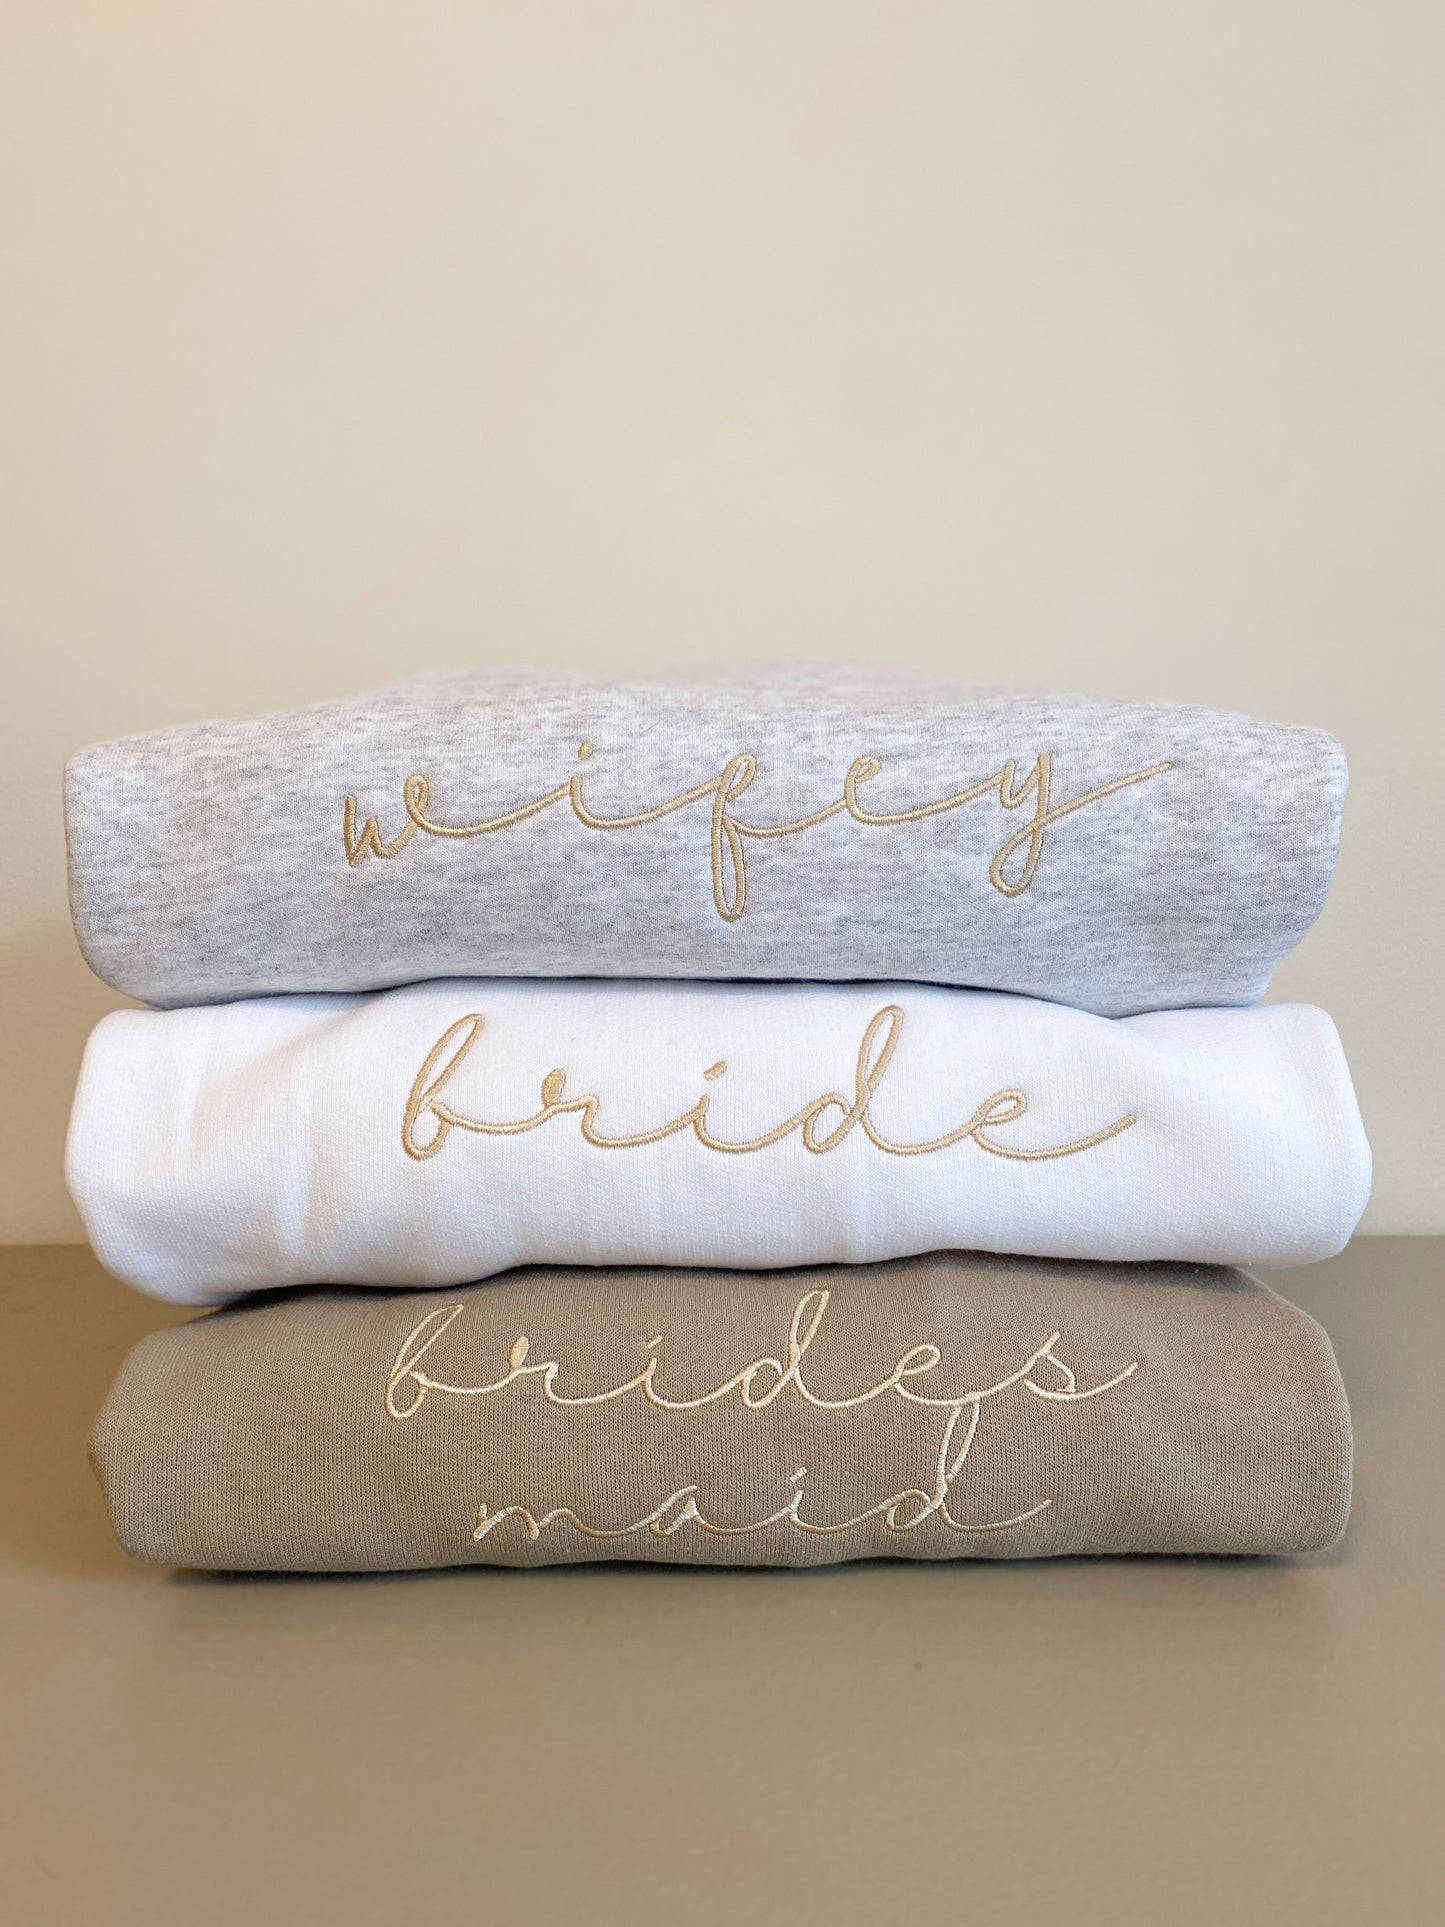 Wifey Sweatshirt -- Custom Calligraphy Sweatshirt, Bridal Party Shirts